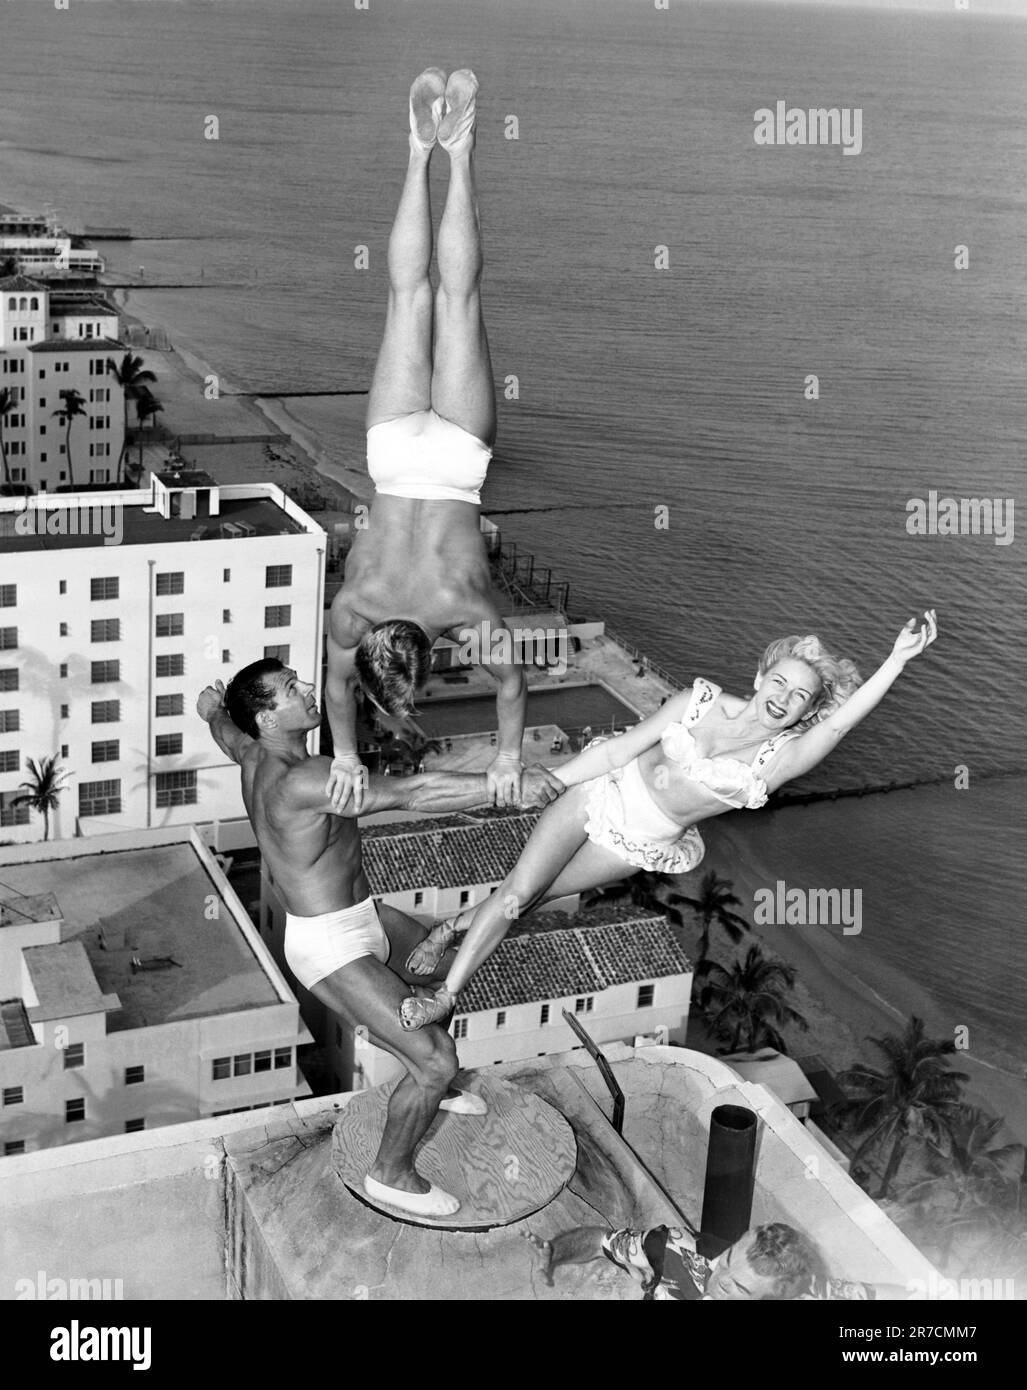 Miami Beach, Florida: 15 novembre 1951 il trio Wayne-Marlin prova in cima al camino del Lord Tarleton Hotel. George Wayne Long tiene Glen Marlin Sundby e sua sorella Dolores senza sforzo apparente venti storie sopra il terreno. Foto Stock